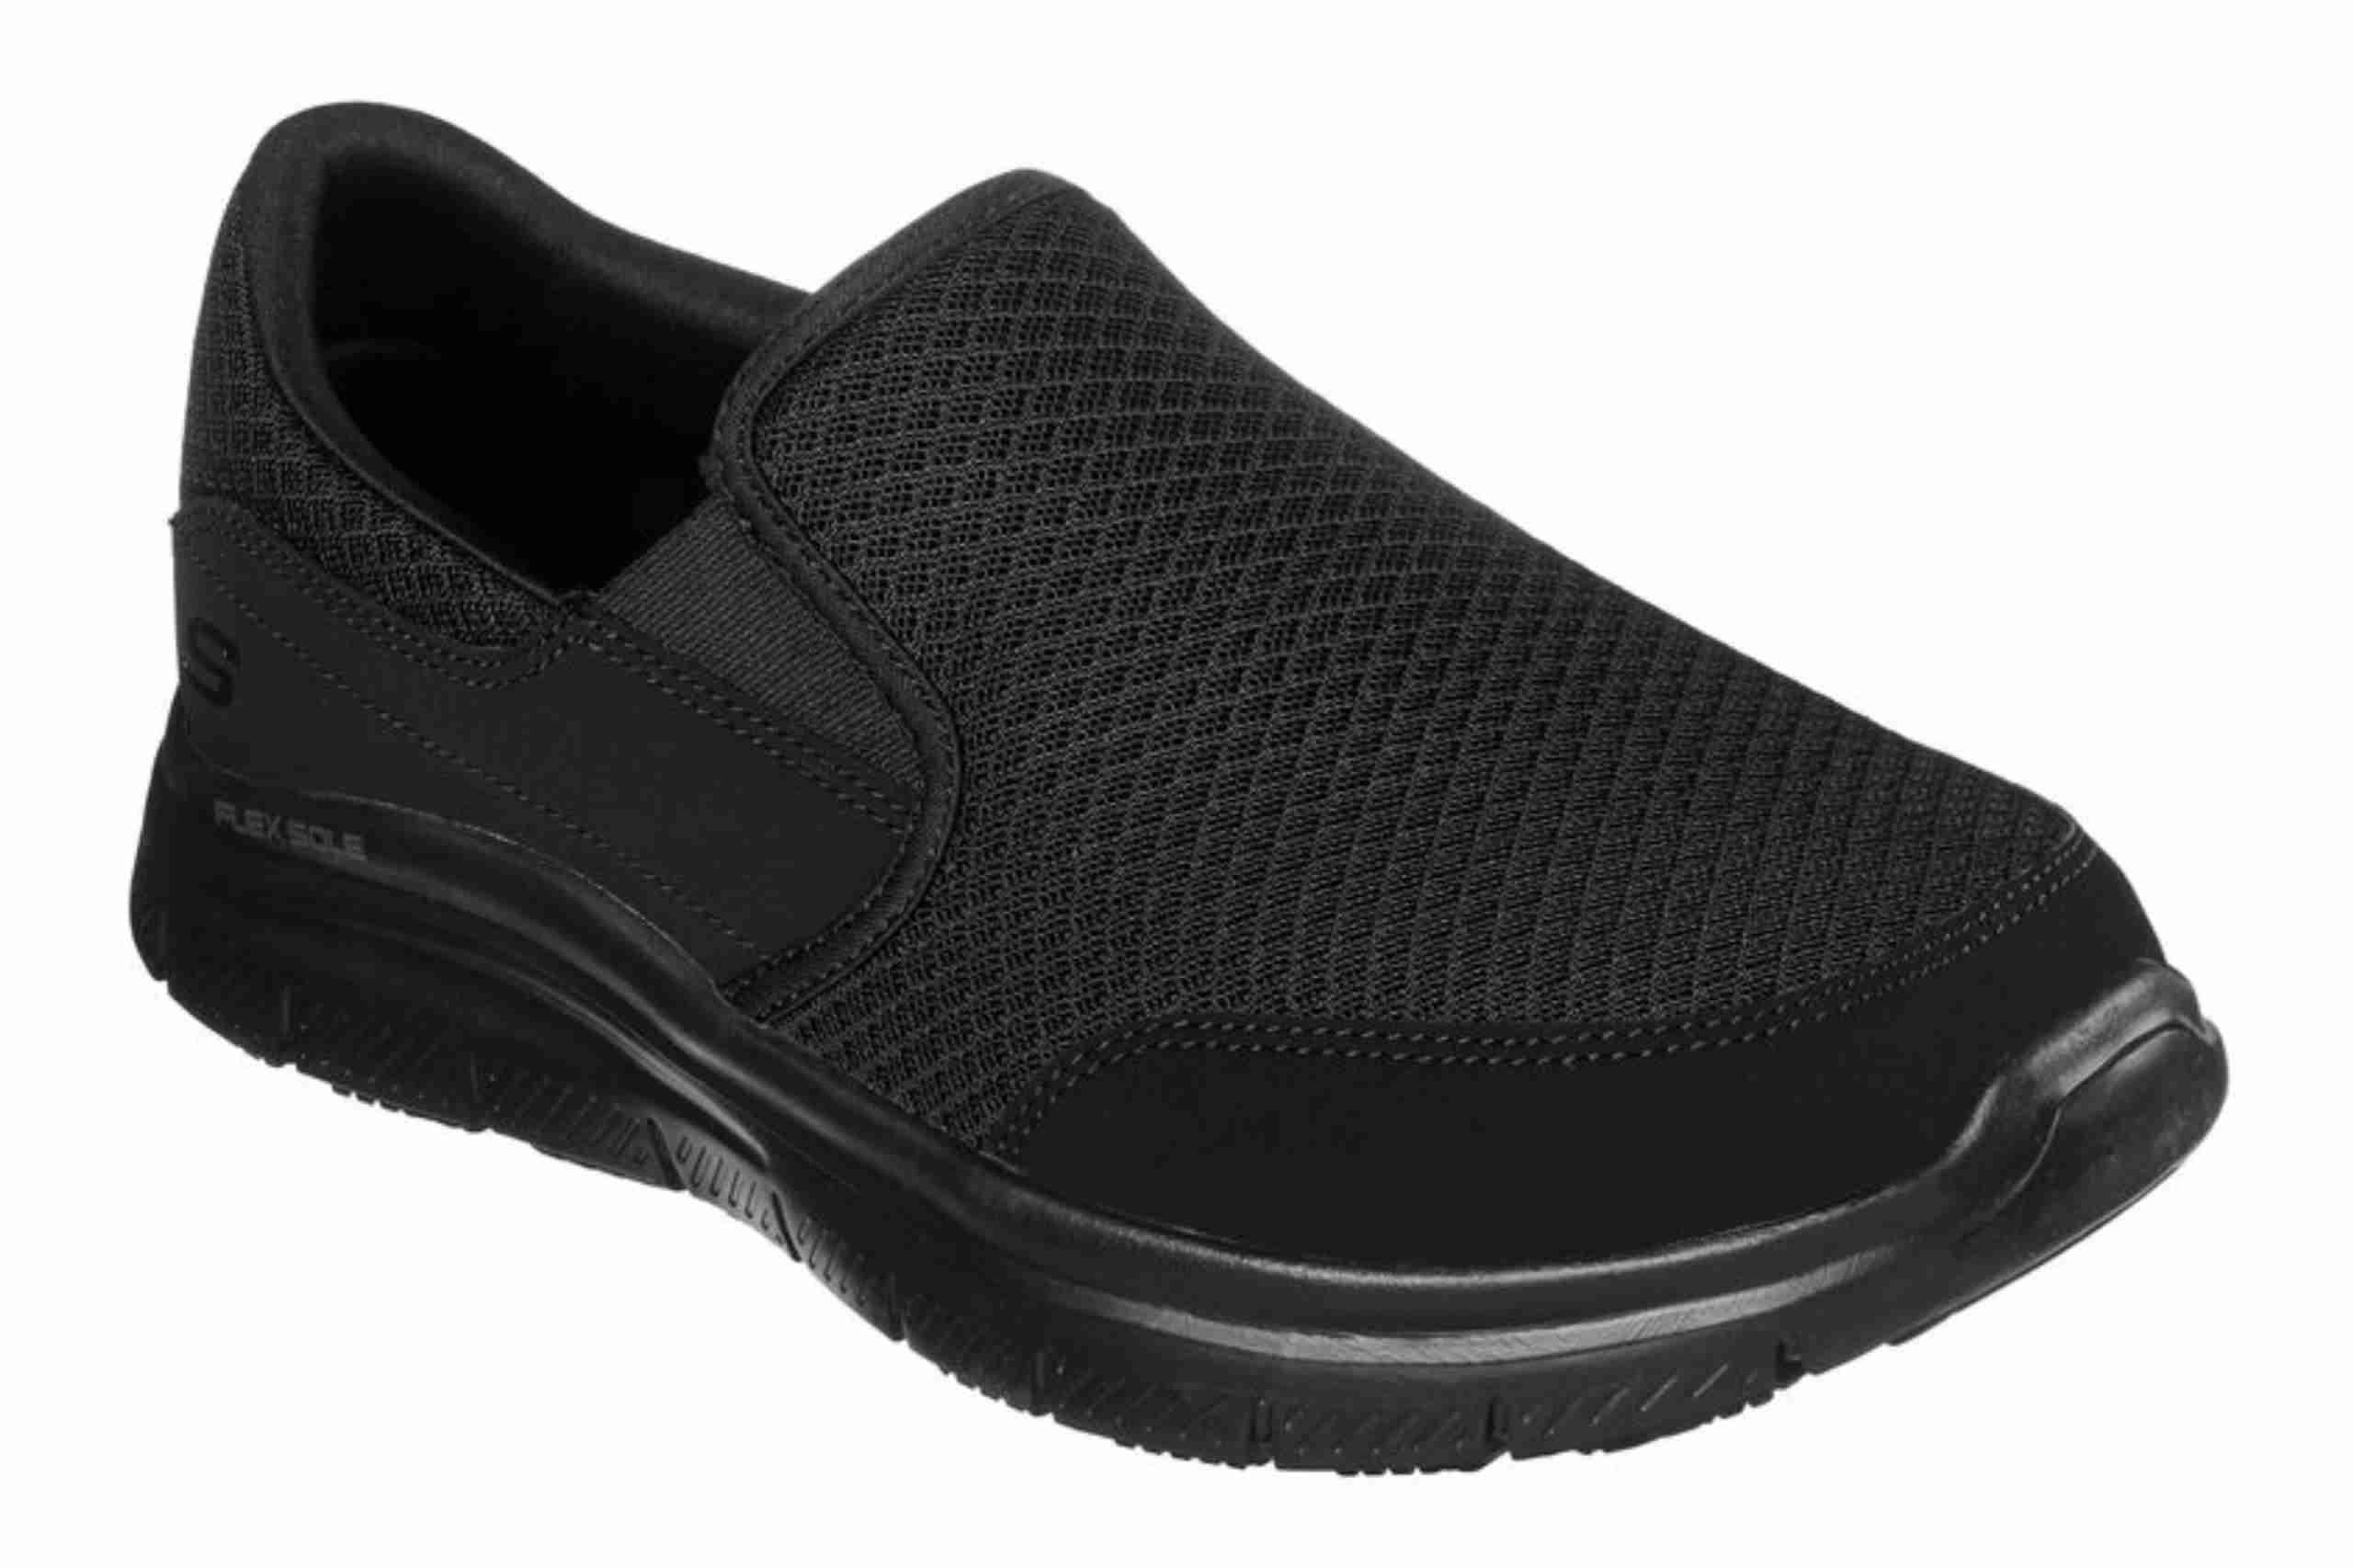 Skechers shoes for nurses